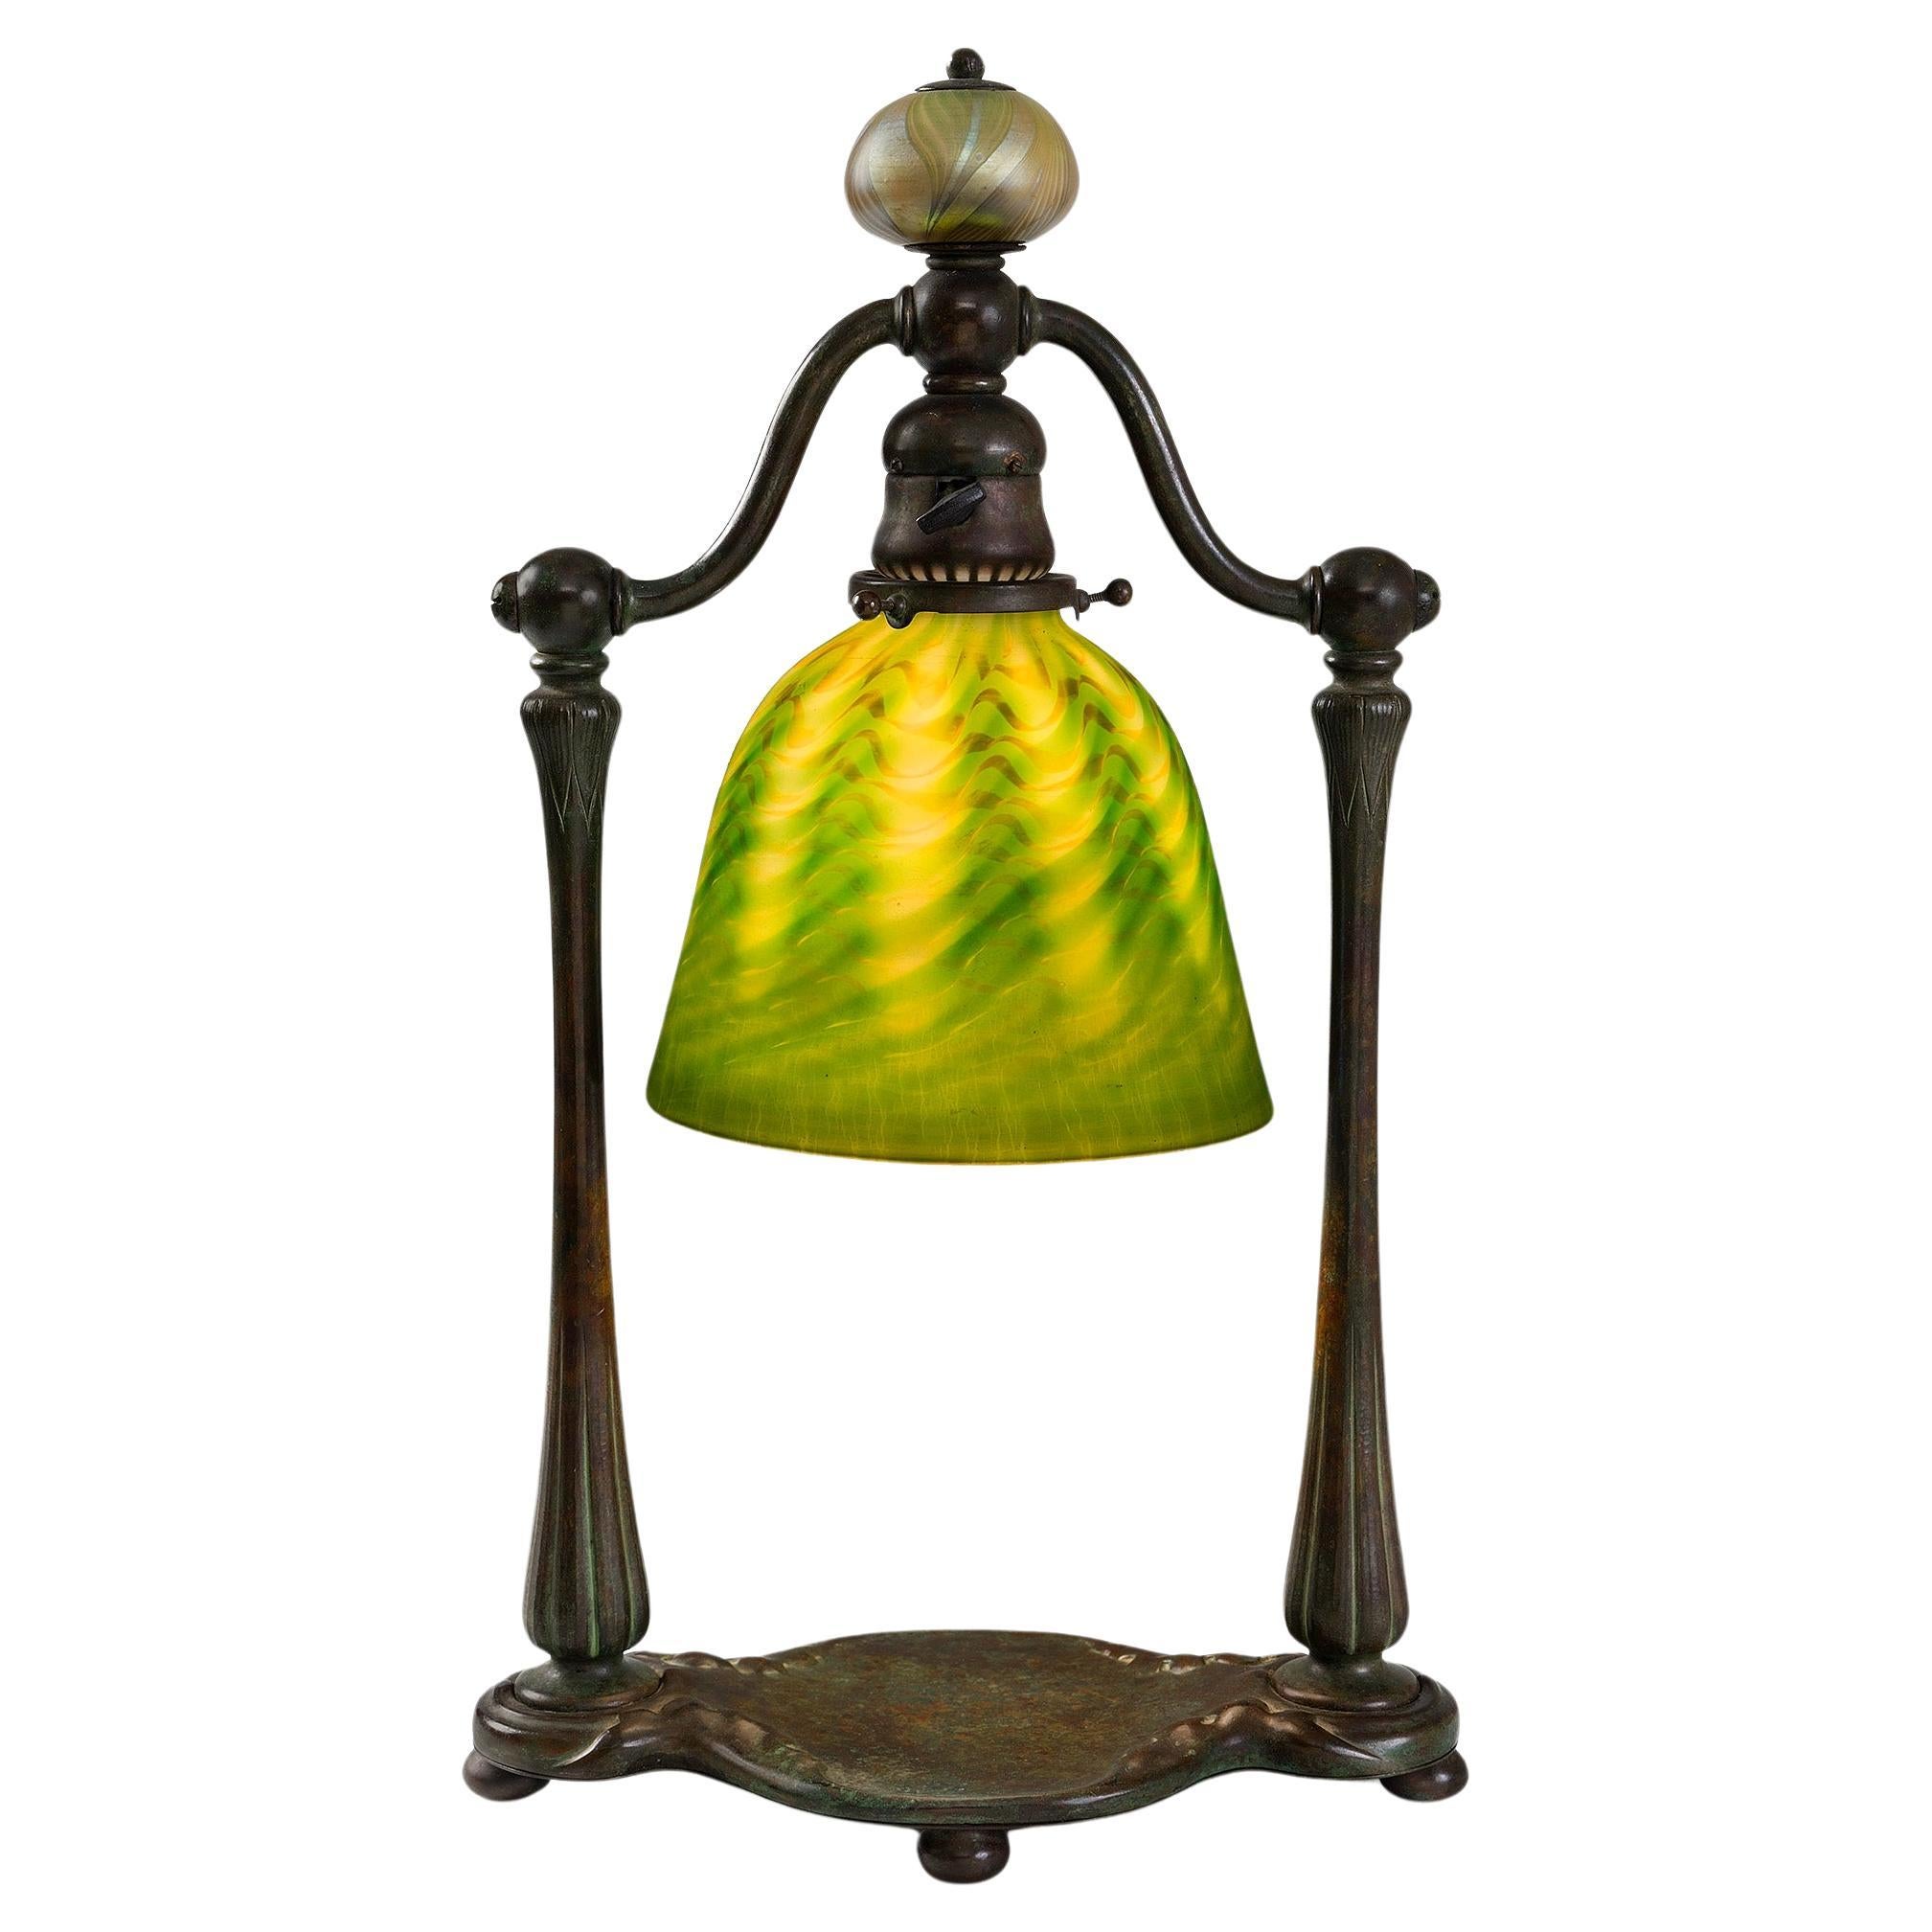 Tiffany Studios New York "Damascene Lighthouse" Desk Lamp For Sale